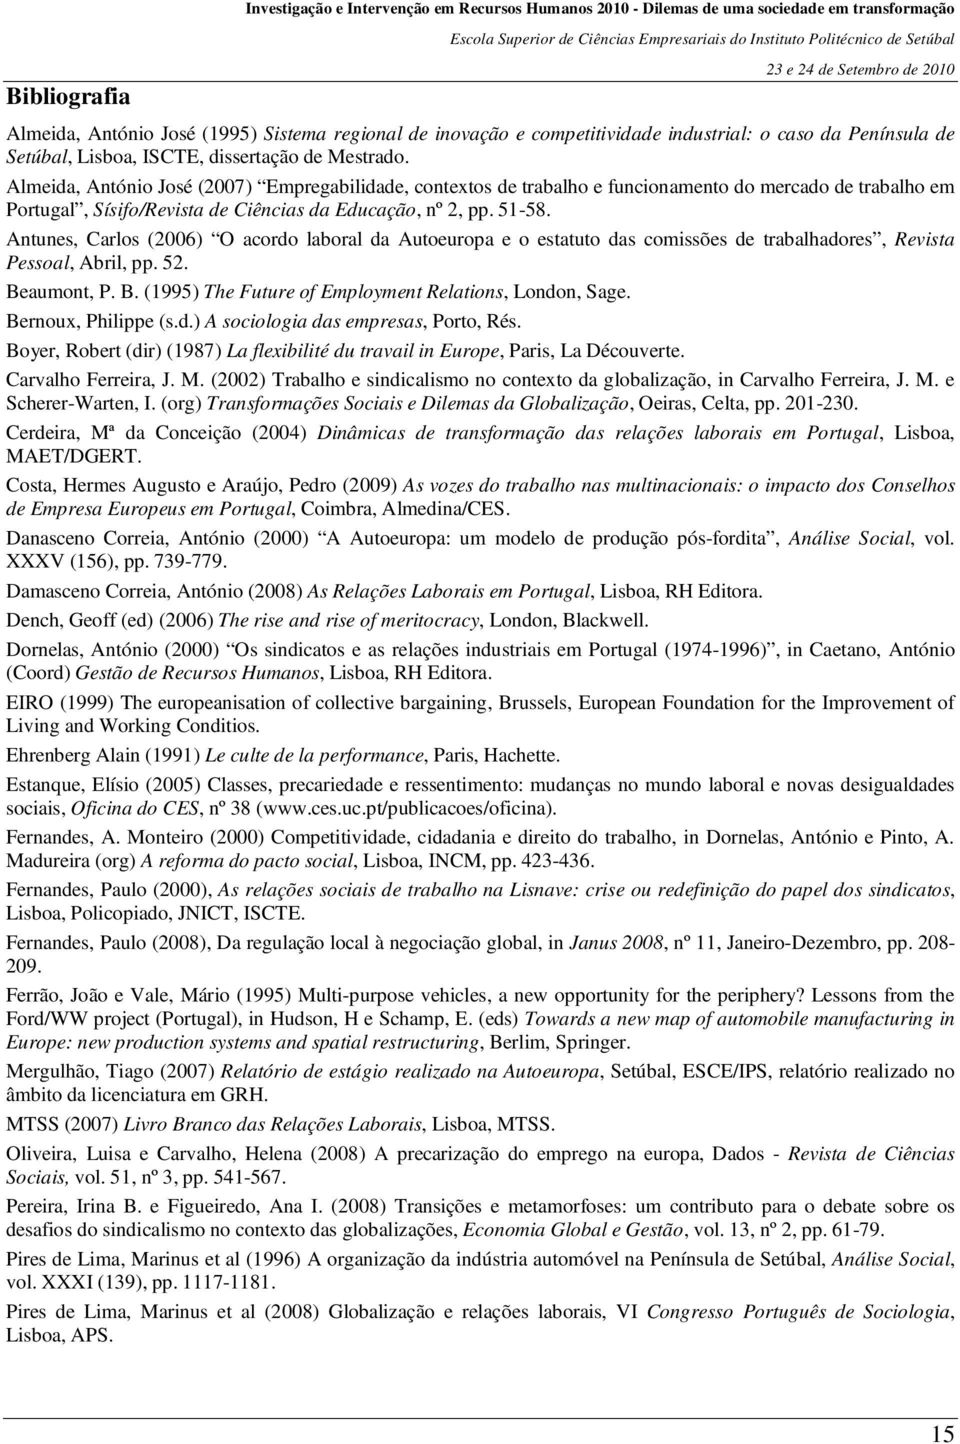 Almeida, António José (2007) Empregabilidade, contextos de trabalho e funcionamento do mercado de trabalho em Portugal, Sísifo/Revista de Ciências da Educação, nº 2, pp. 51-58.